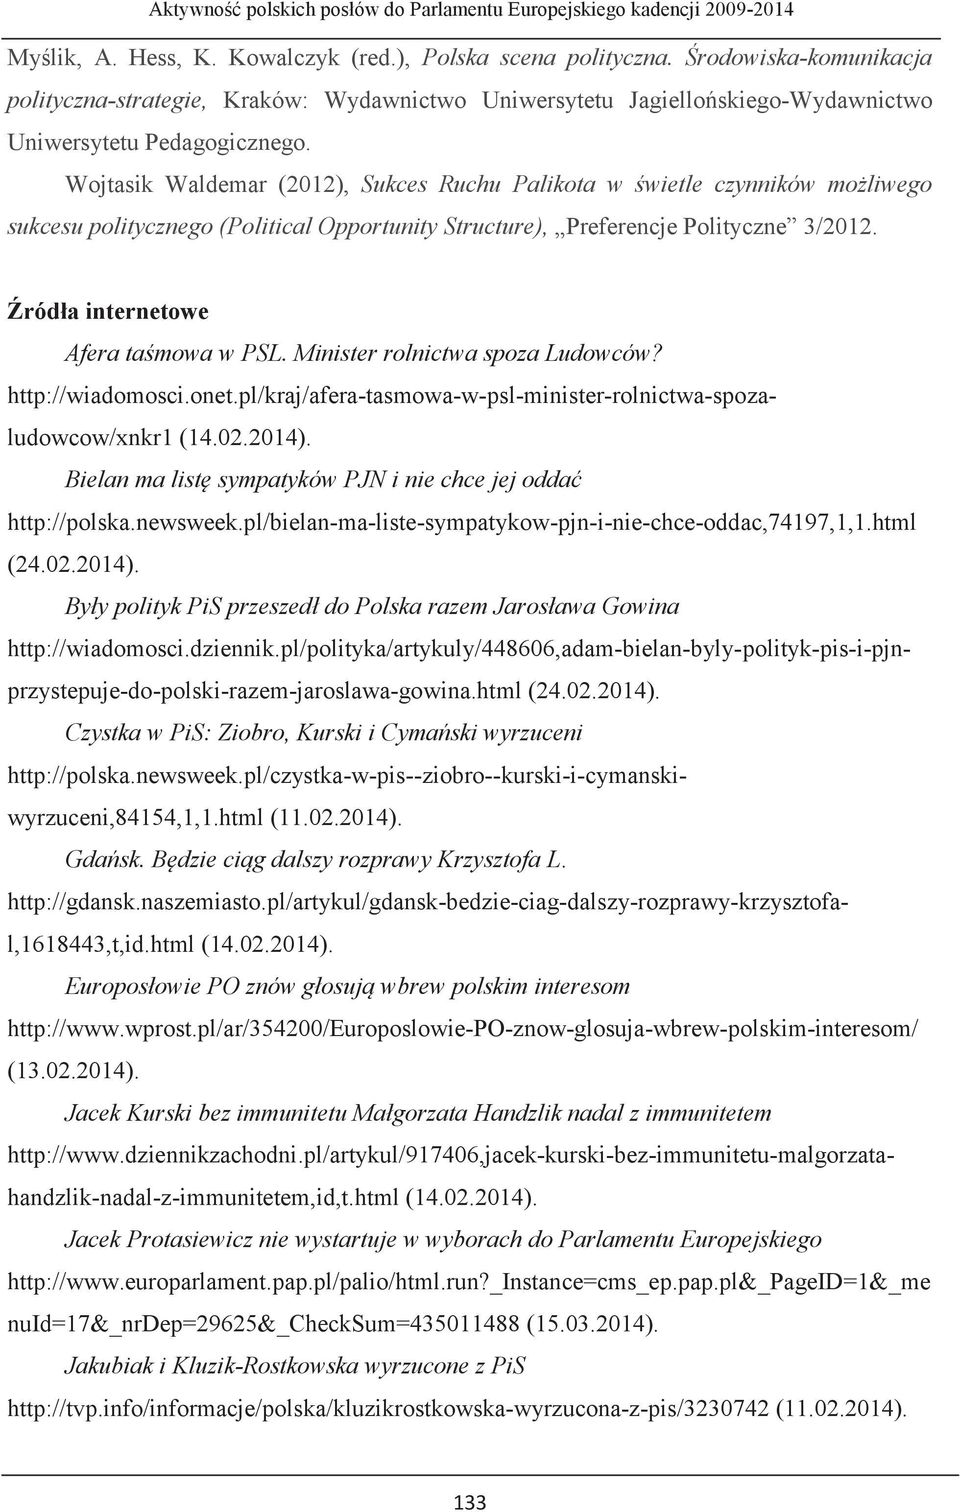 Źródła internetowe Afera taśmowa w PSL. Minister rolnictwa spoza Ludowców? http://wiadomosci.onet.pl/kraj/afera-tasmowa-w-psl-minister-rolnictwa-spozaludowcow/xnkr1 (14.02.2014).